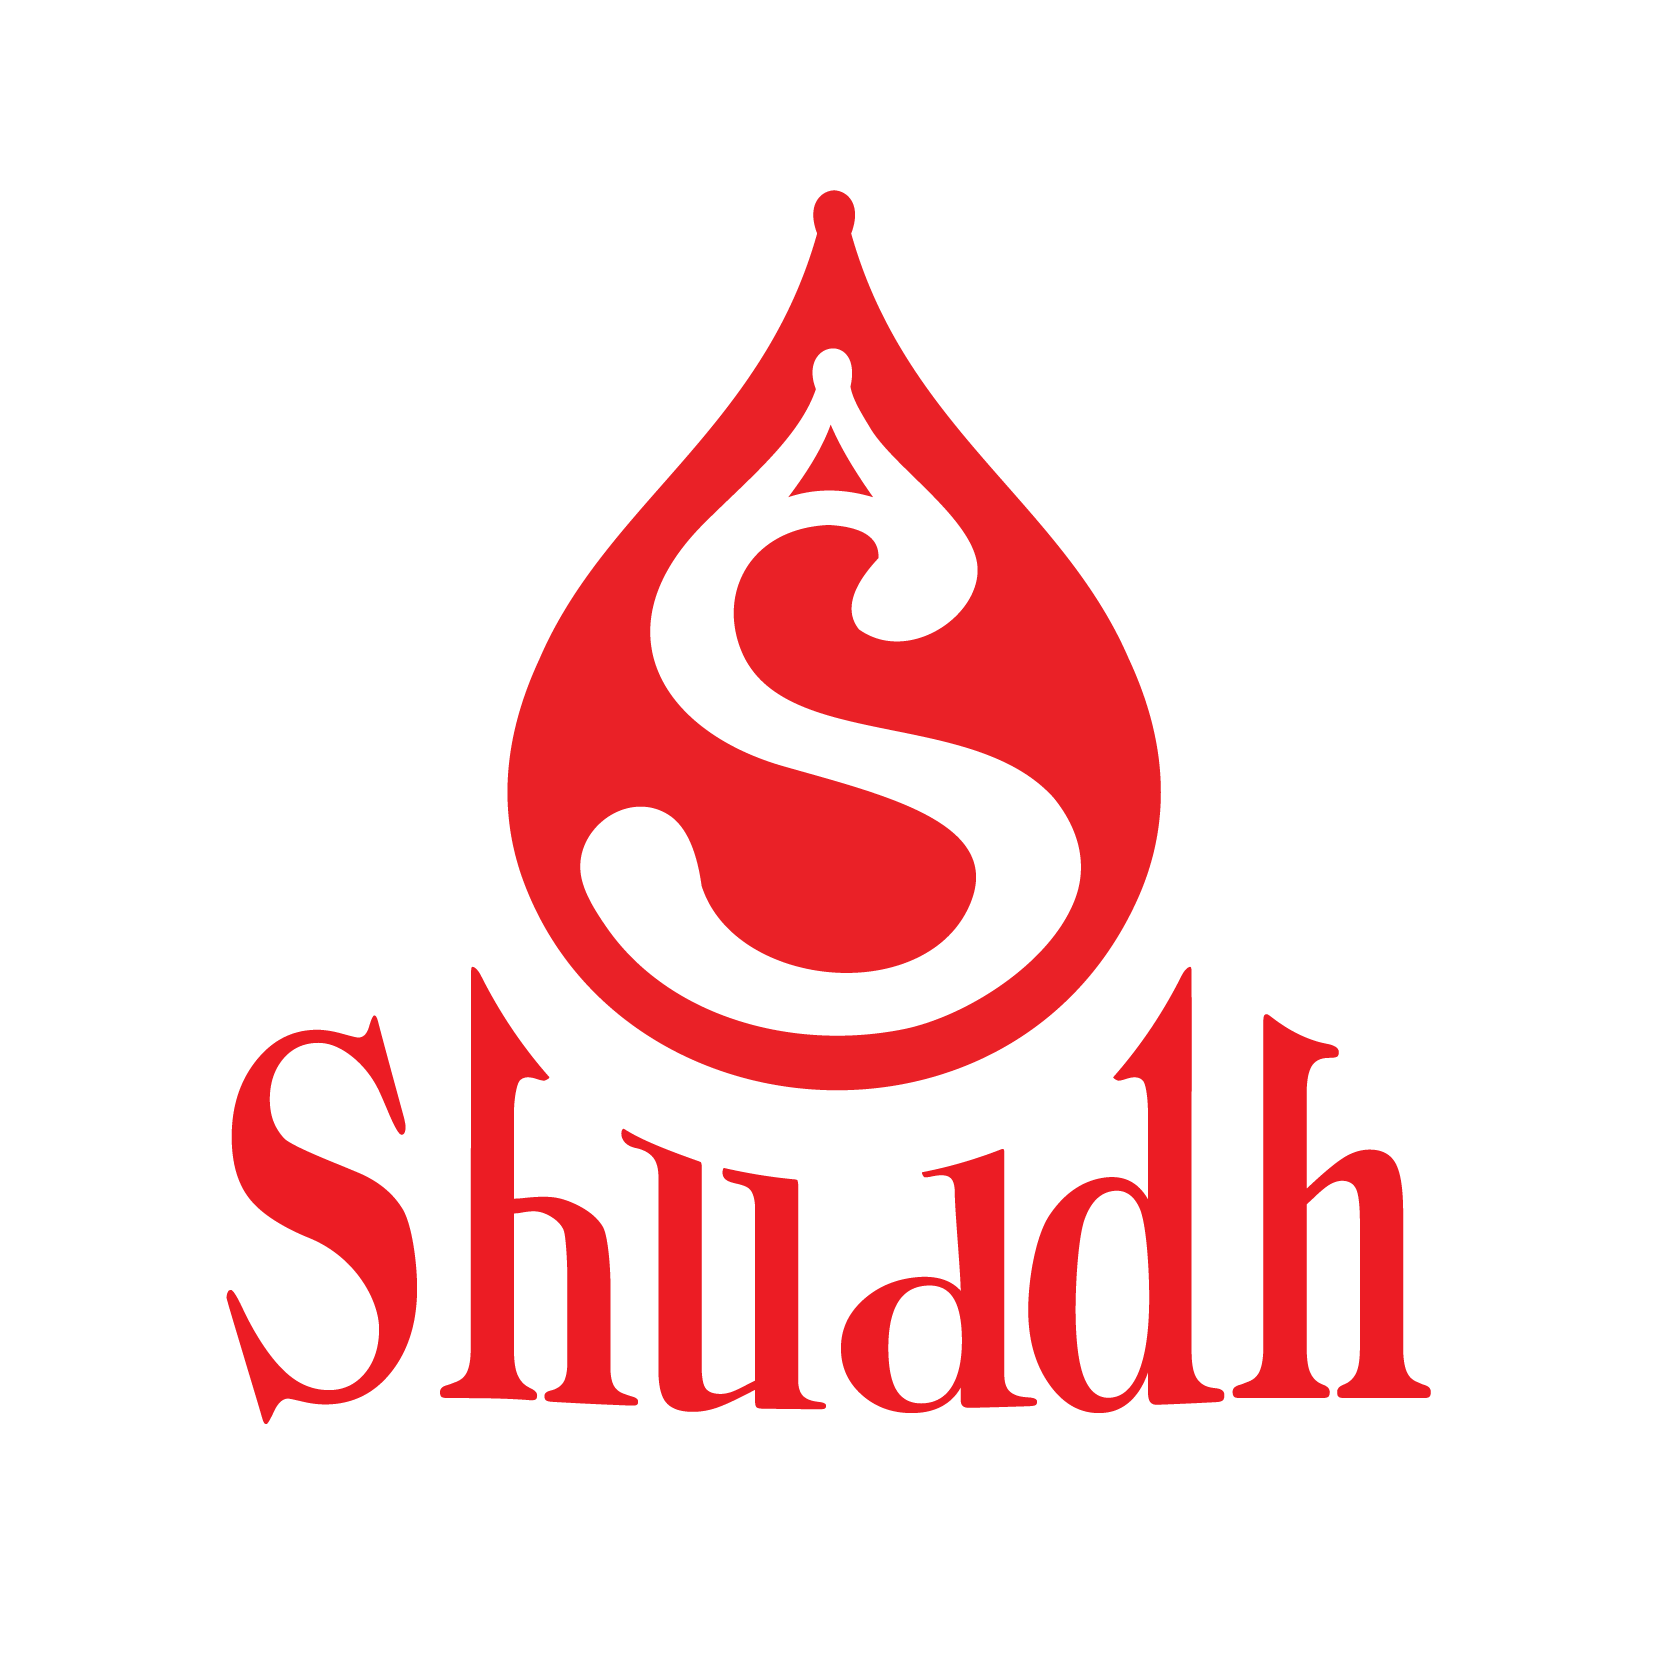 Shuddh-logo-jumpptech